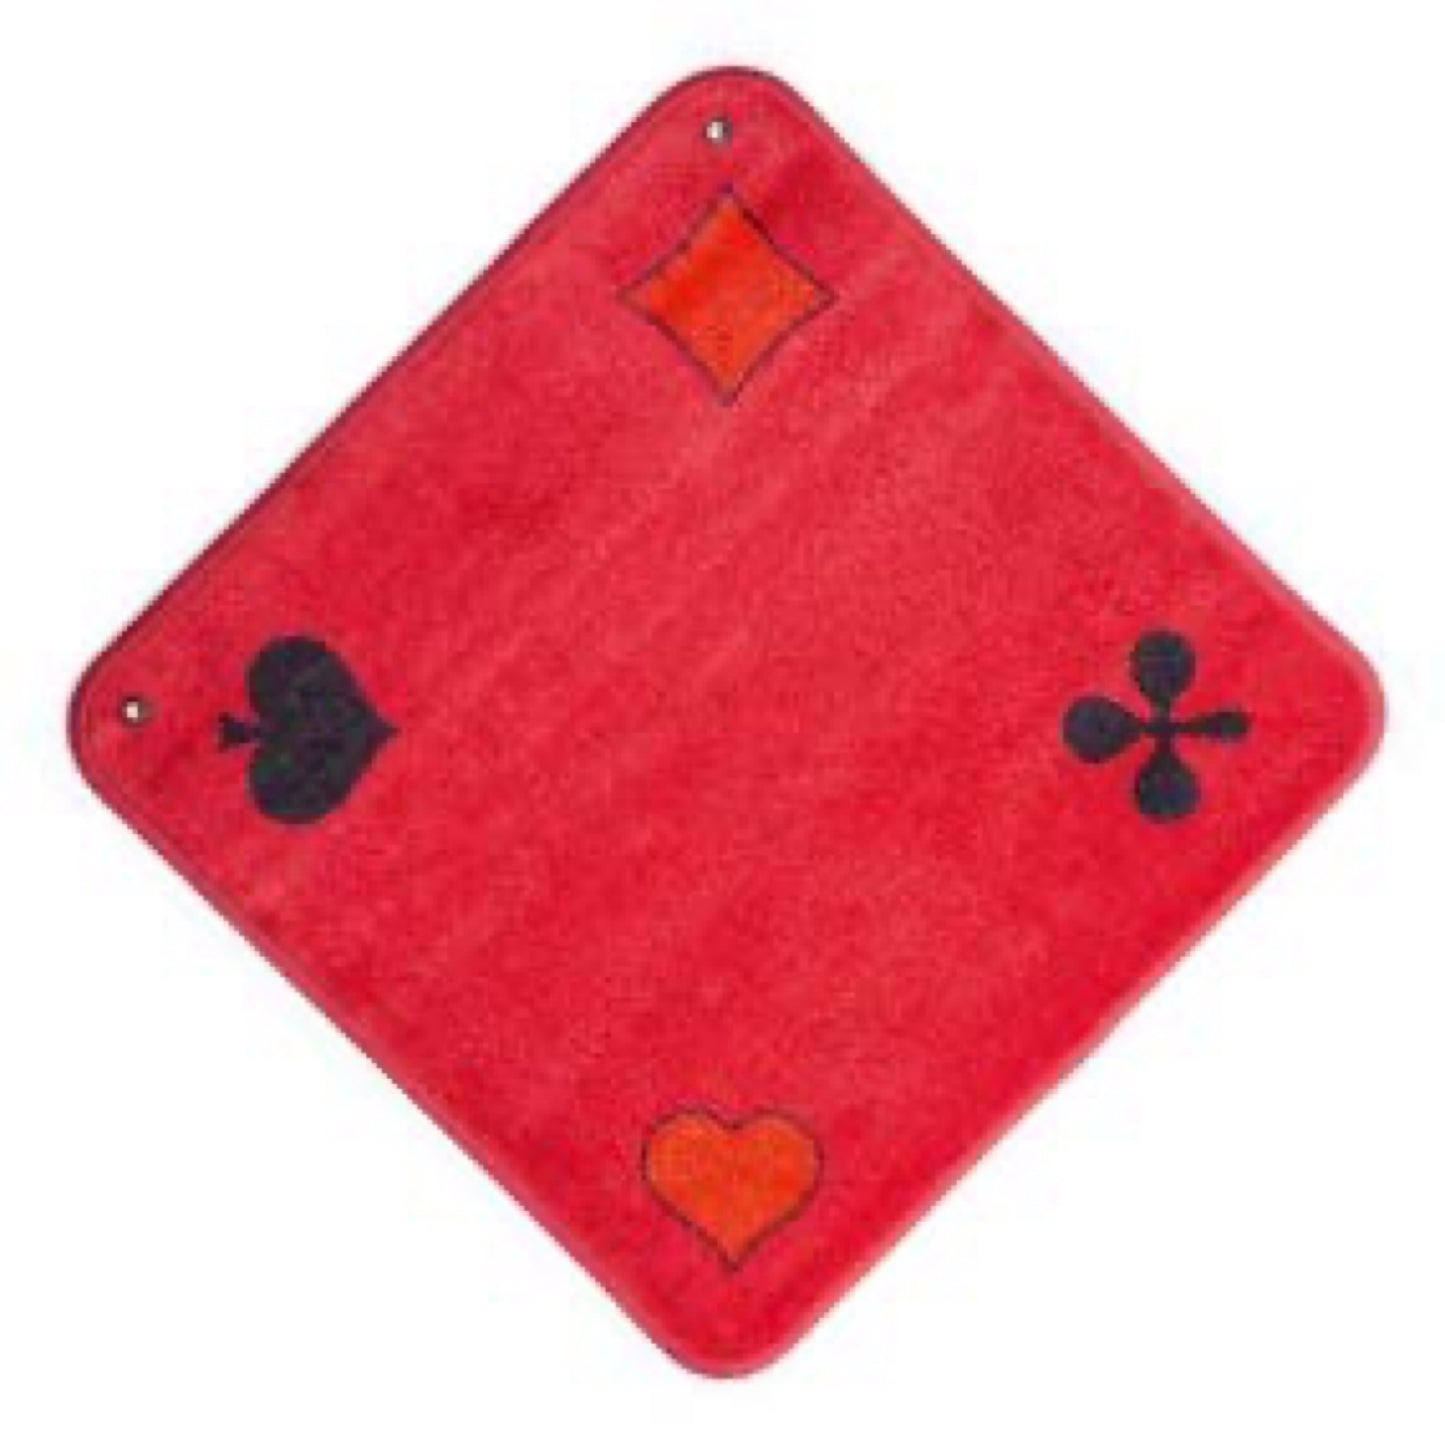 Roter Jass-Teppich – Piquet-Symbol